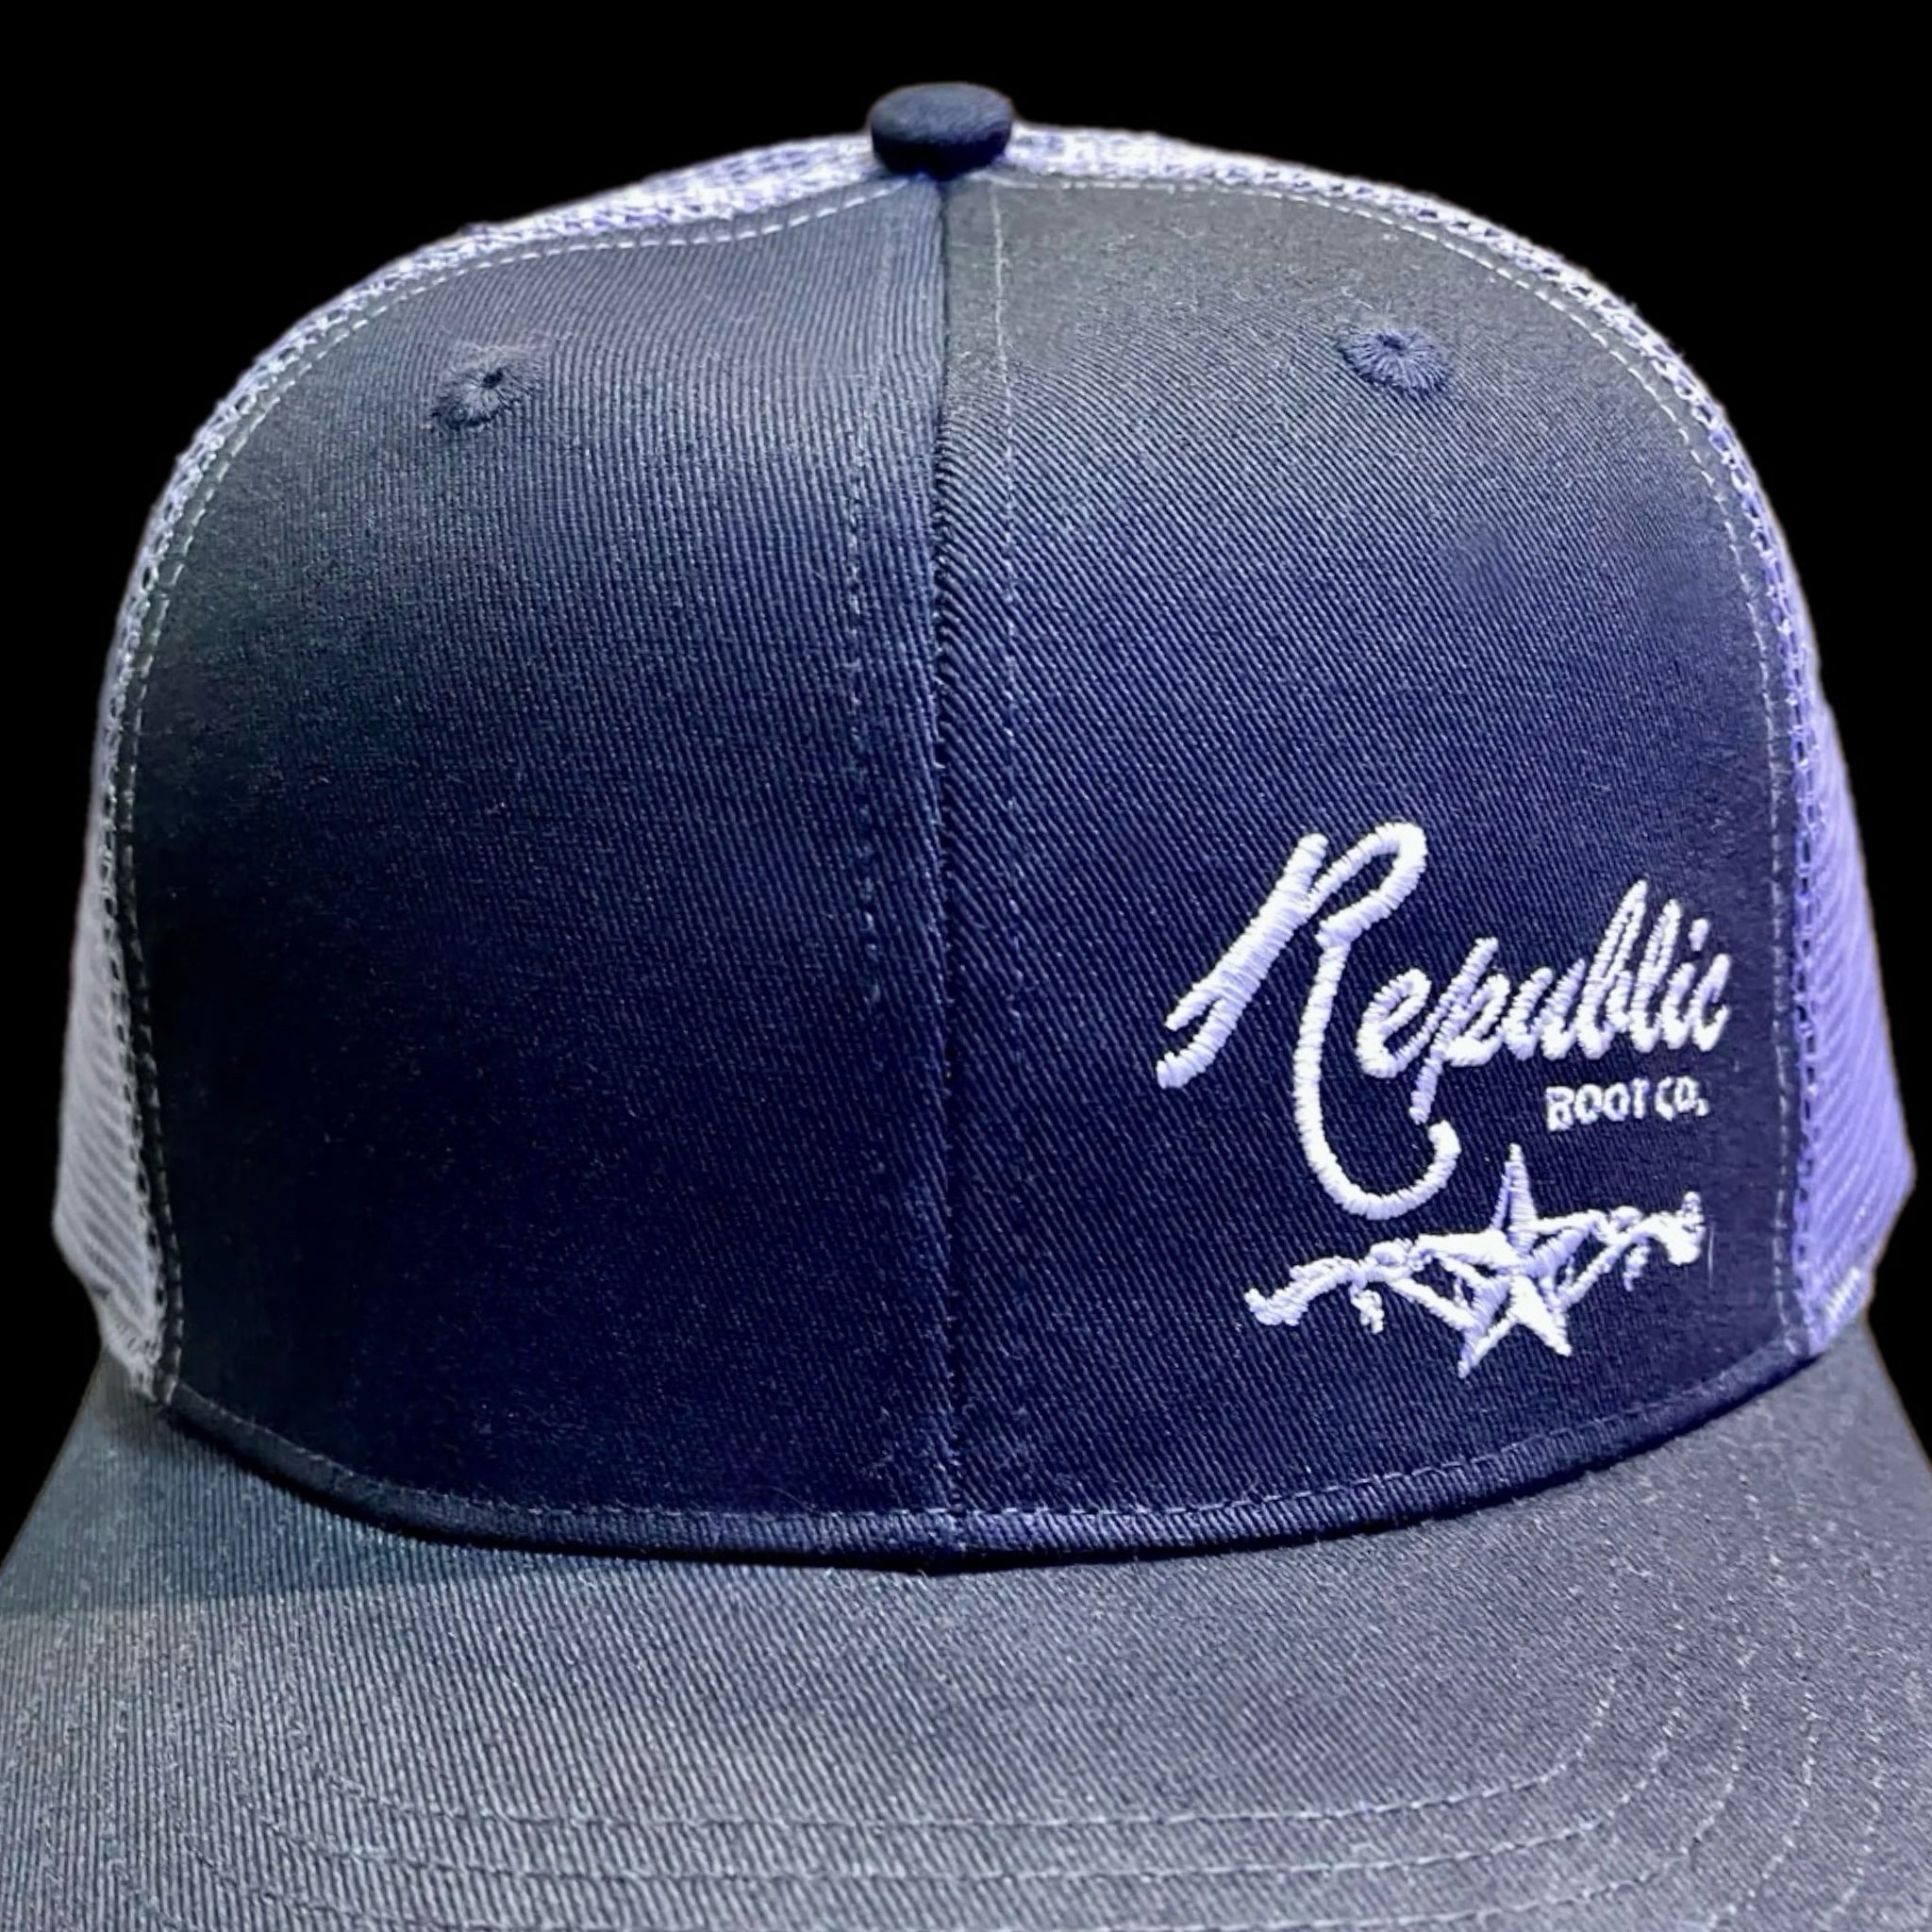 Republic Hat